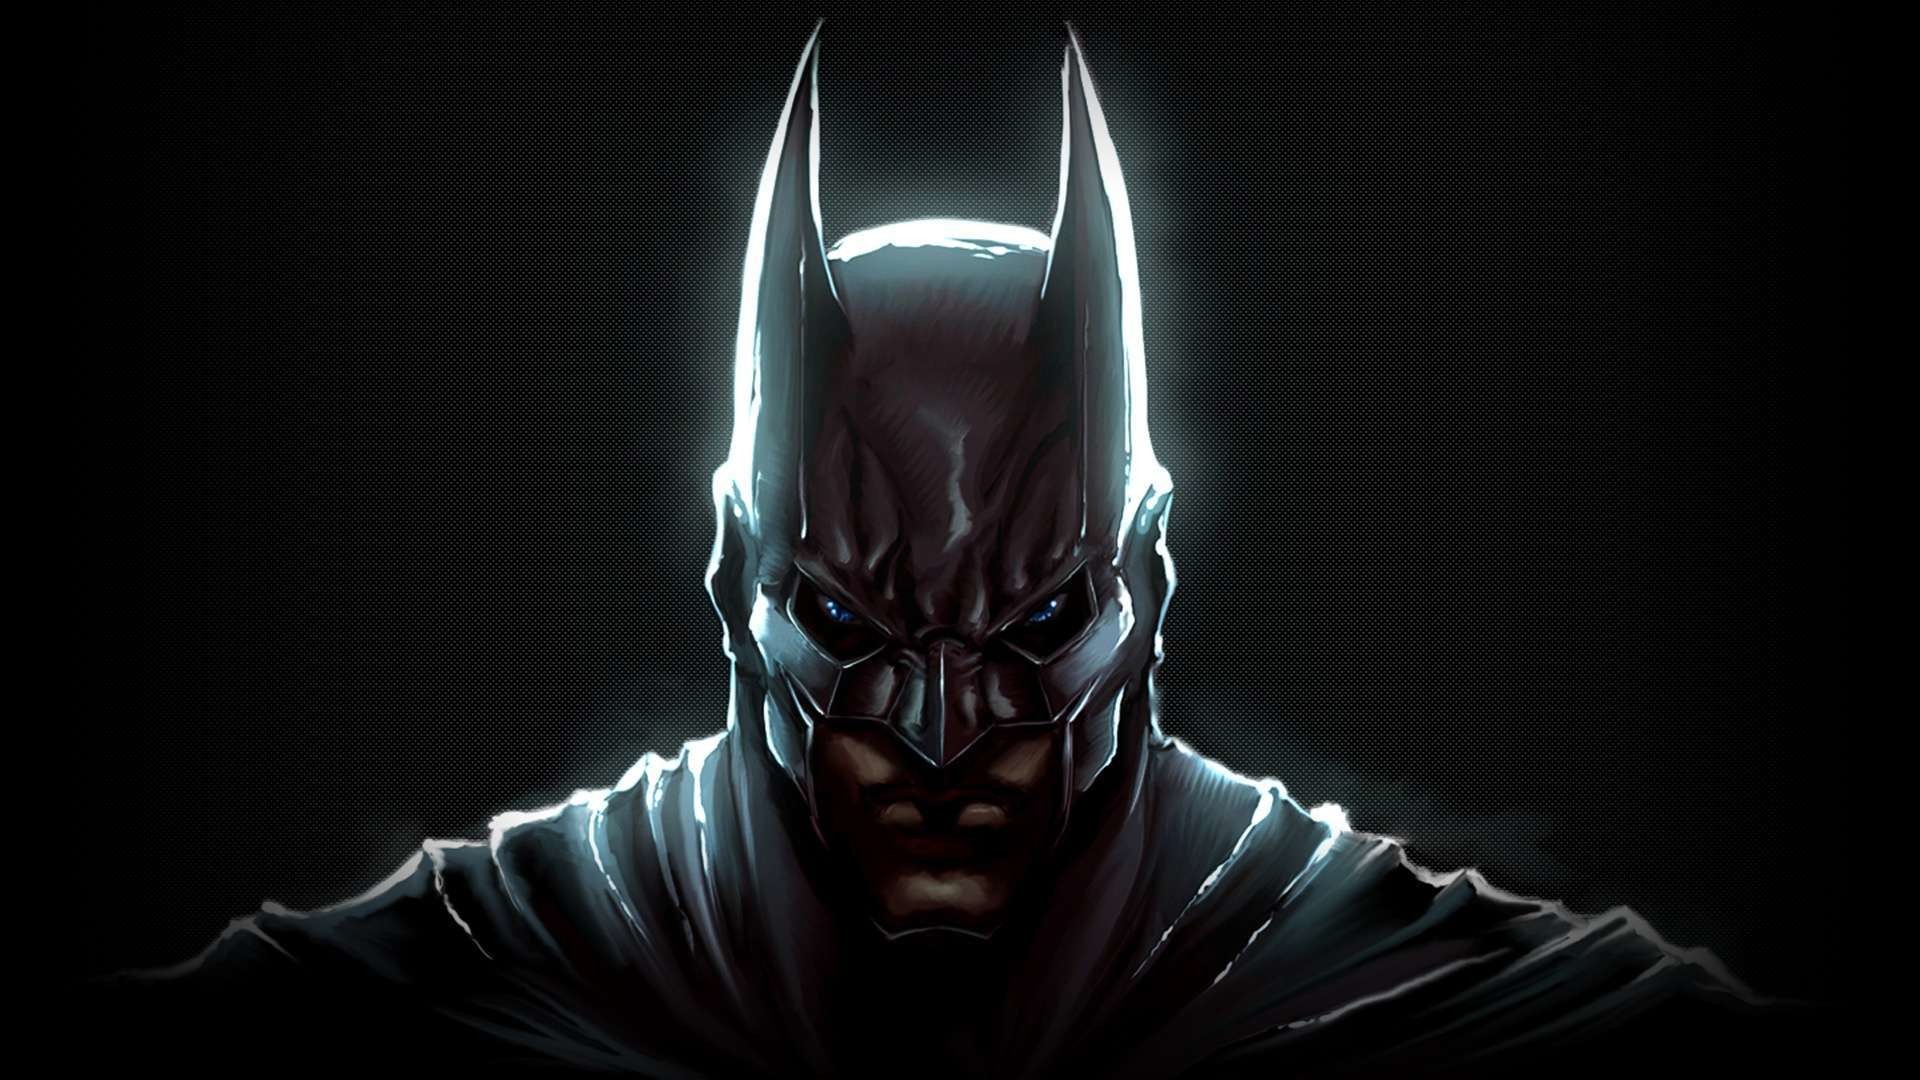 1920x1080 Wallpaper: Dark Knight Batman Hd Wallpaper 1080p. Upload at March 8 .